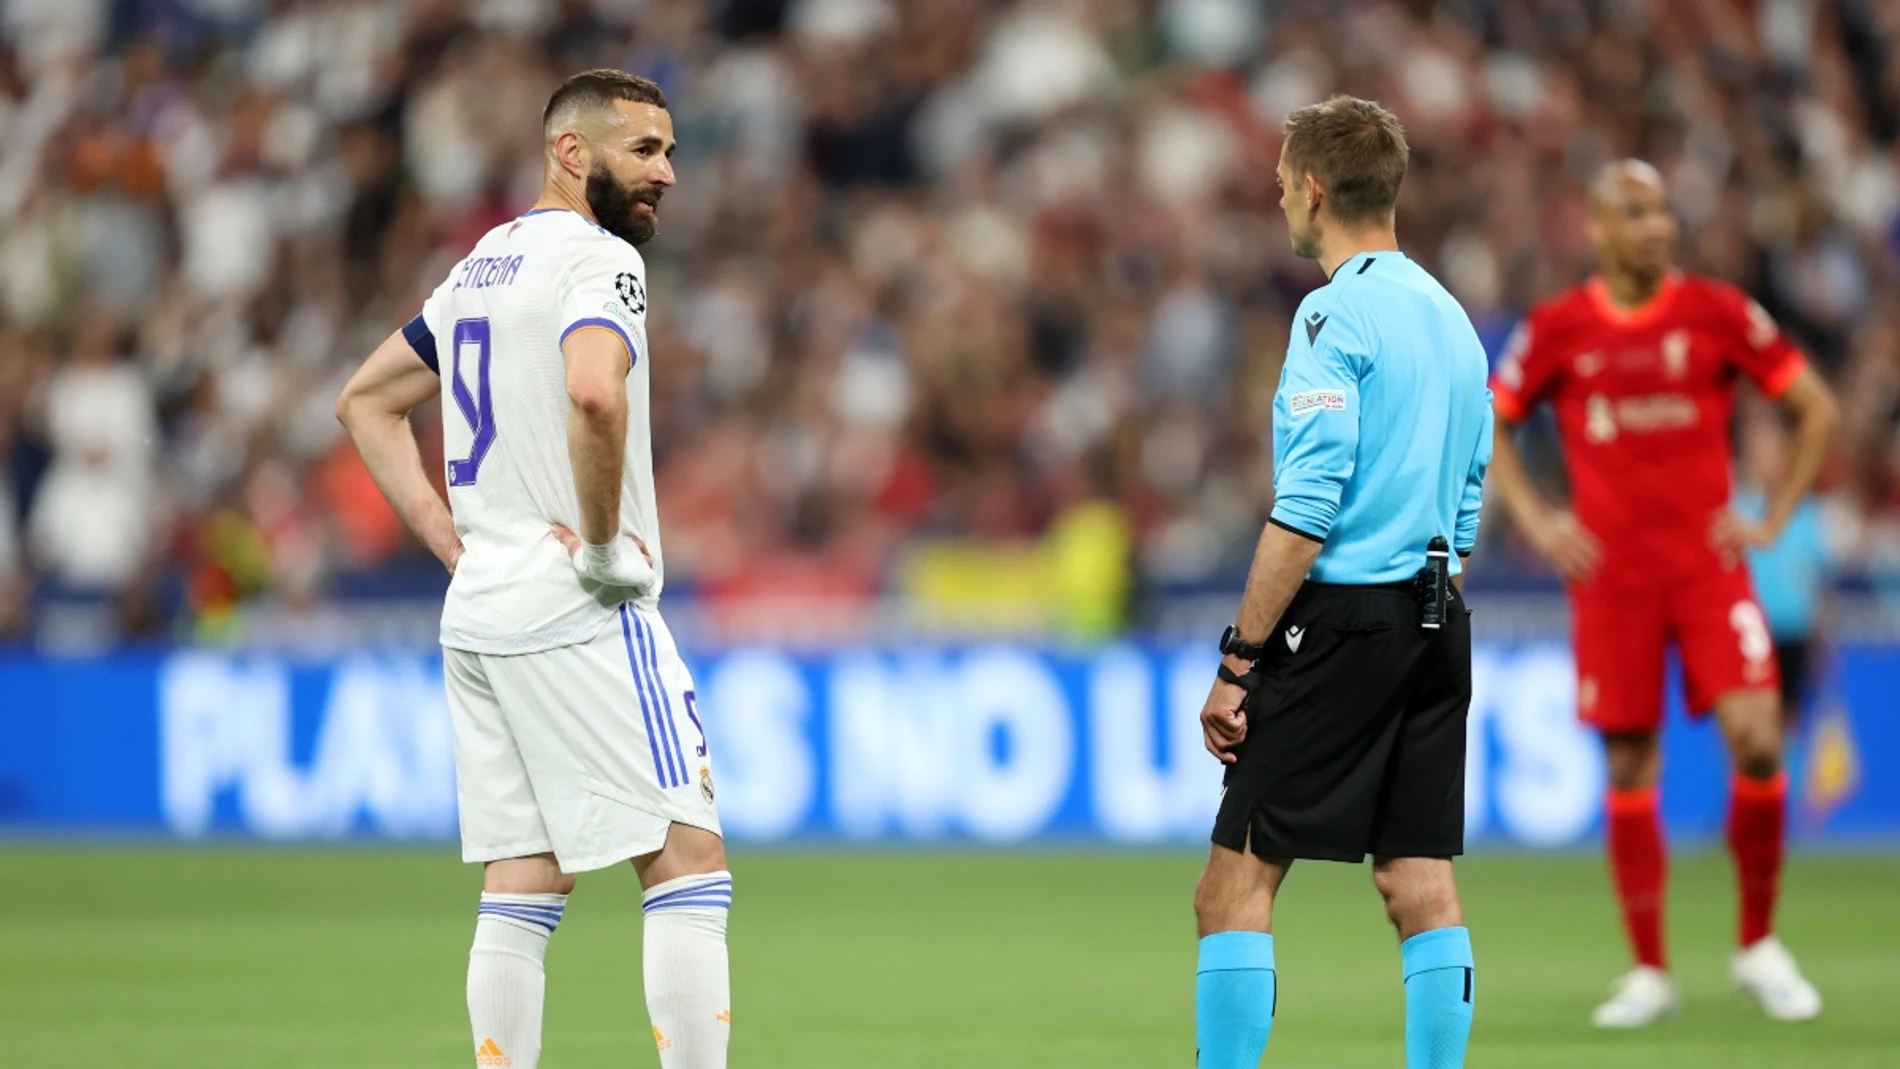 fuera de juego en el gol anulado a Benzema? La polémica de la final de Champions entre Liverpool y Real Madrid